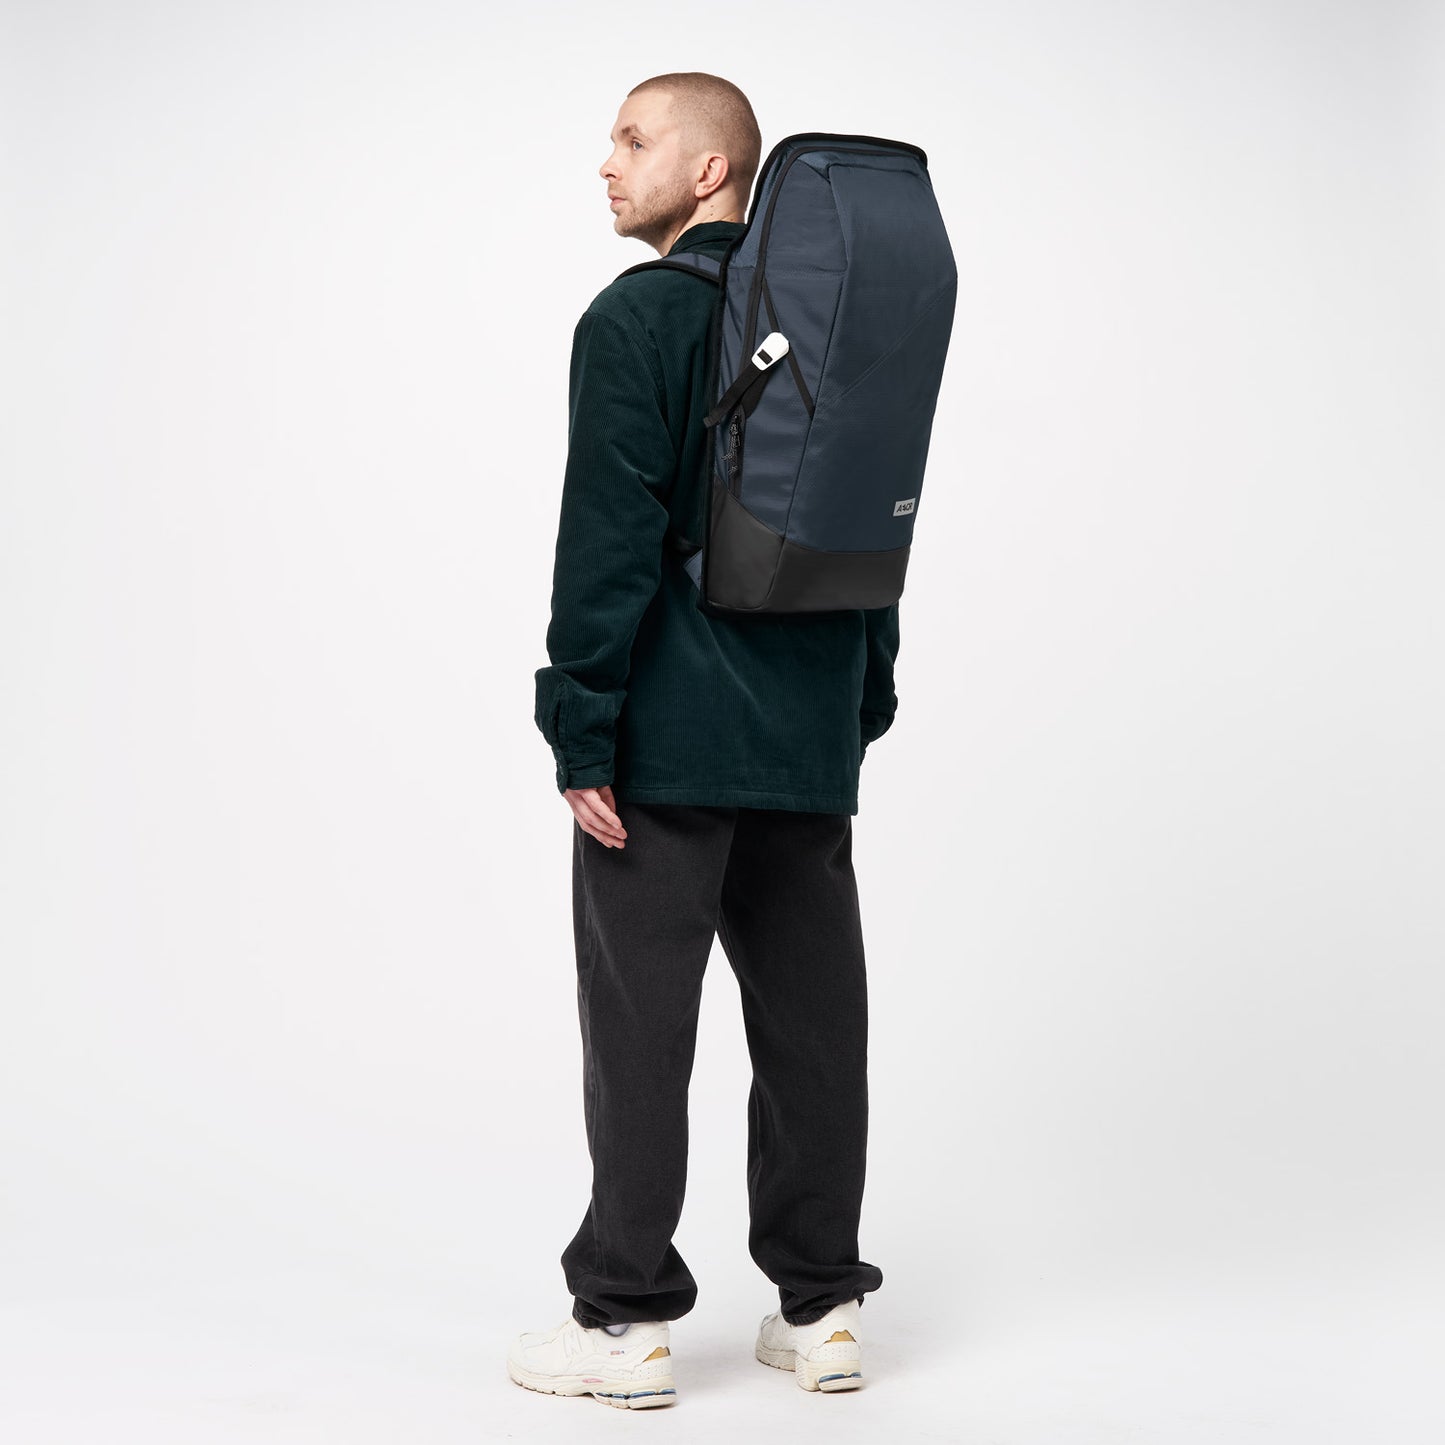 AEVOR-backpack-daypack-proof-petrol-model-side